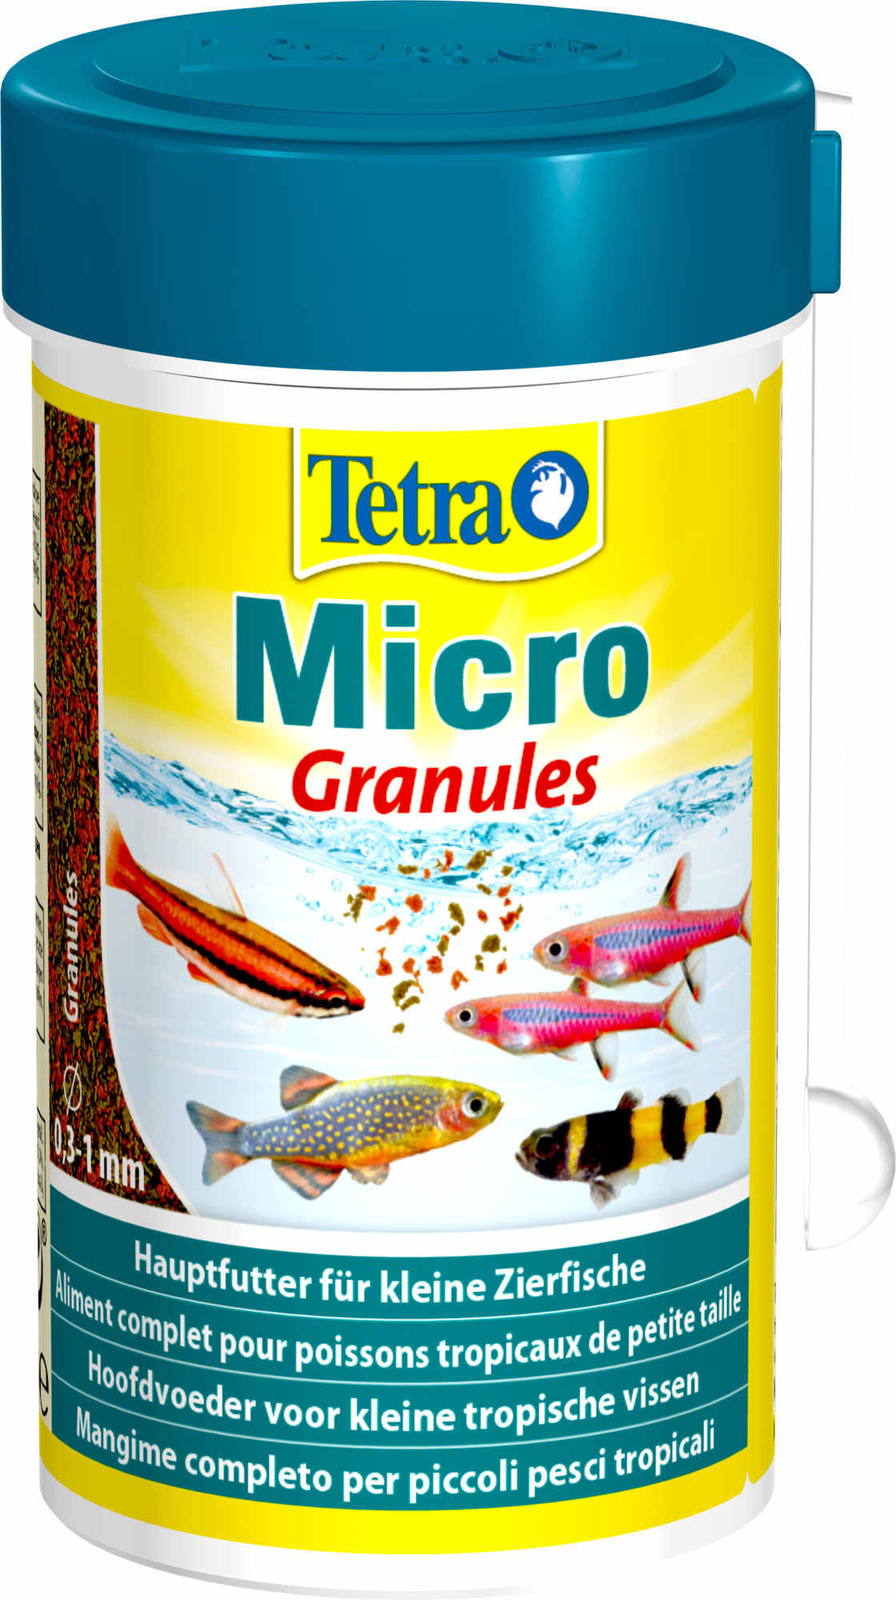 Tetra (корма) Tetra (корма) корм для всех видов мелких рыб, микрогранулы (45 г) tetra корма tetra корма корм для всех видов мелких рыб микрогранулы 45 г